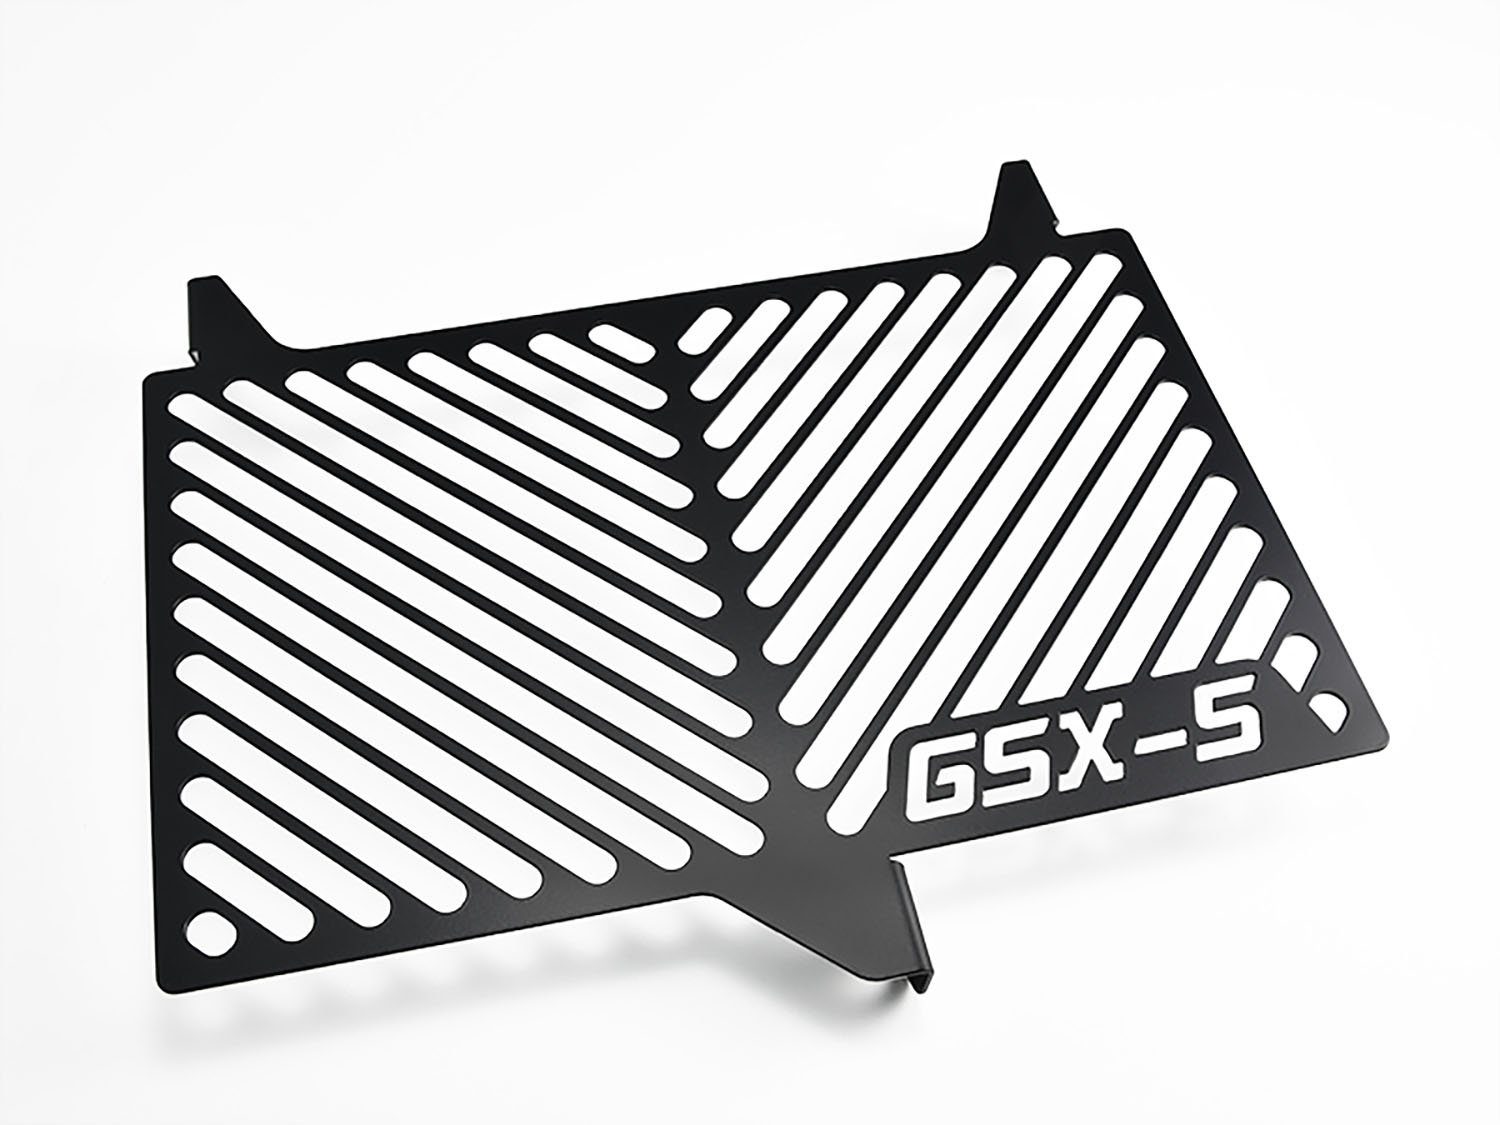 ZIEGER Motorrad-Additiv Kühlerabdeckung für Suzuki GSX-S 750 Logo schwarz, Motorradkühlerabdeckung